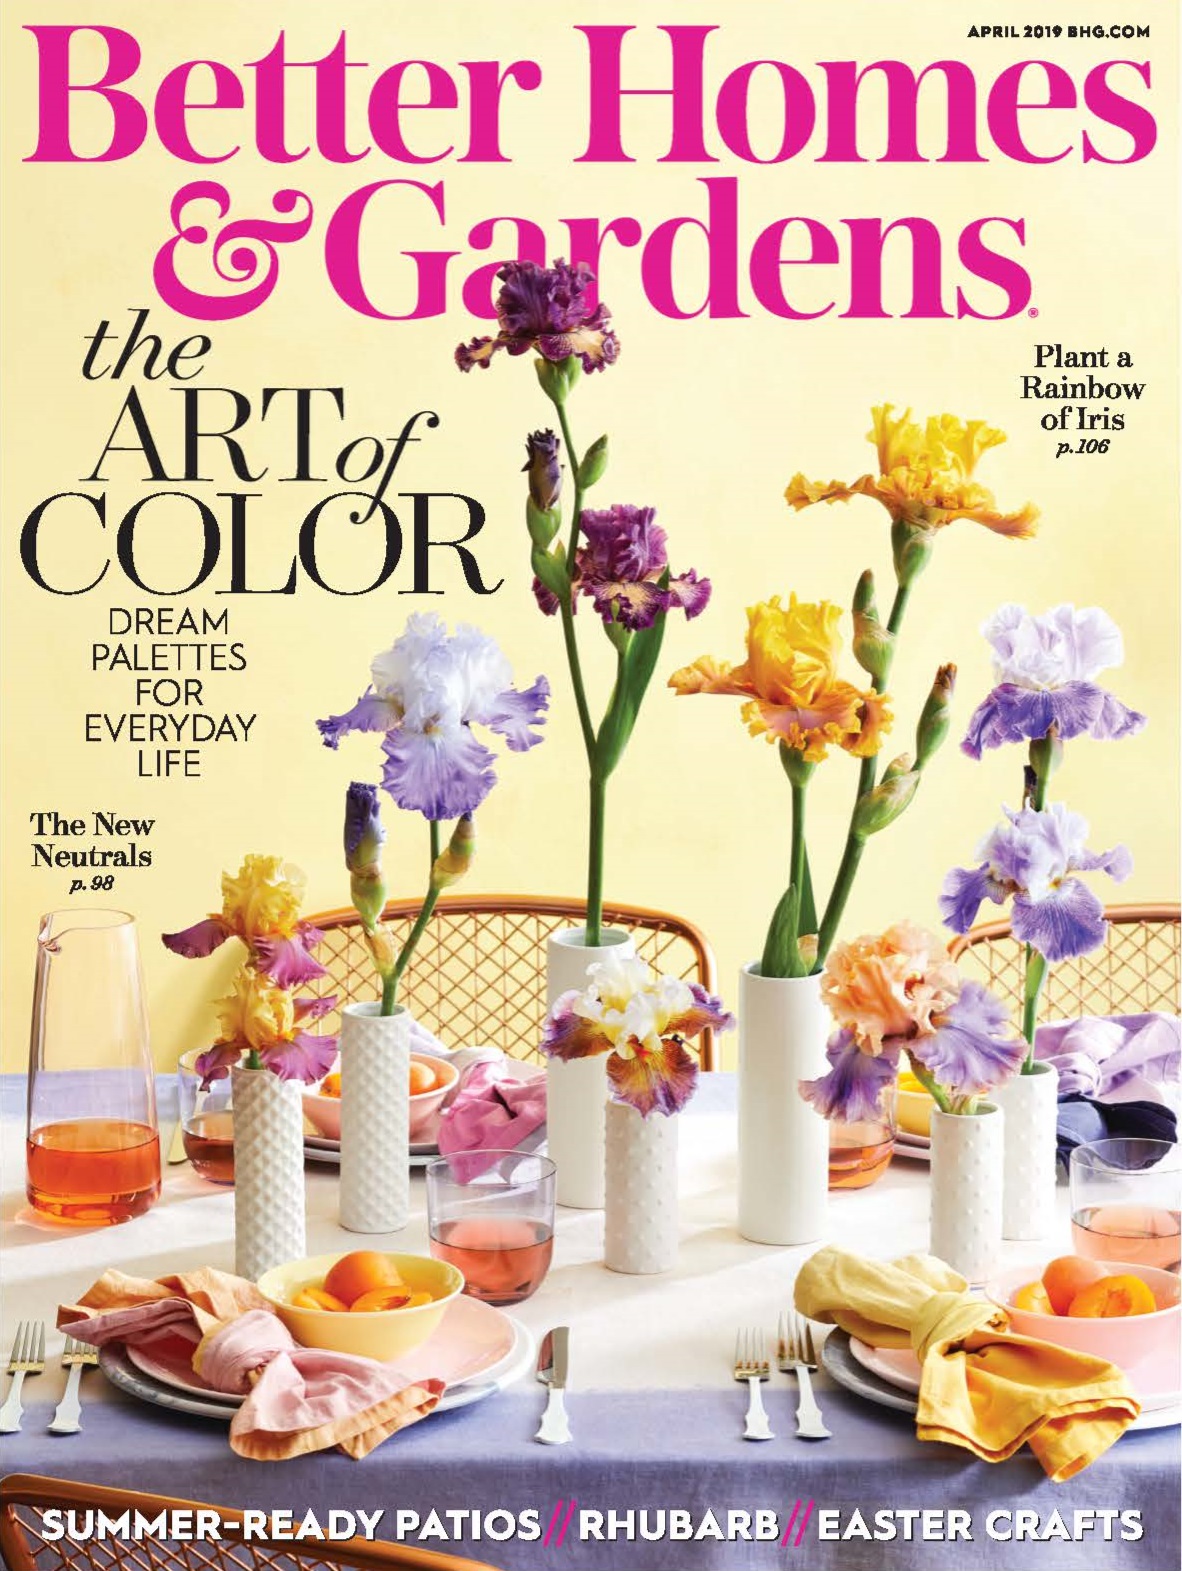 Better Homes & Gardens Cover April 2019.jpg